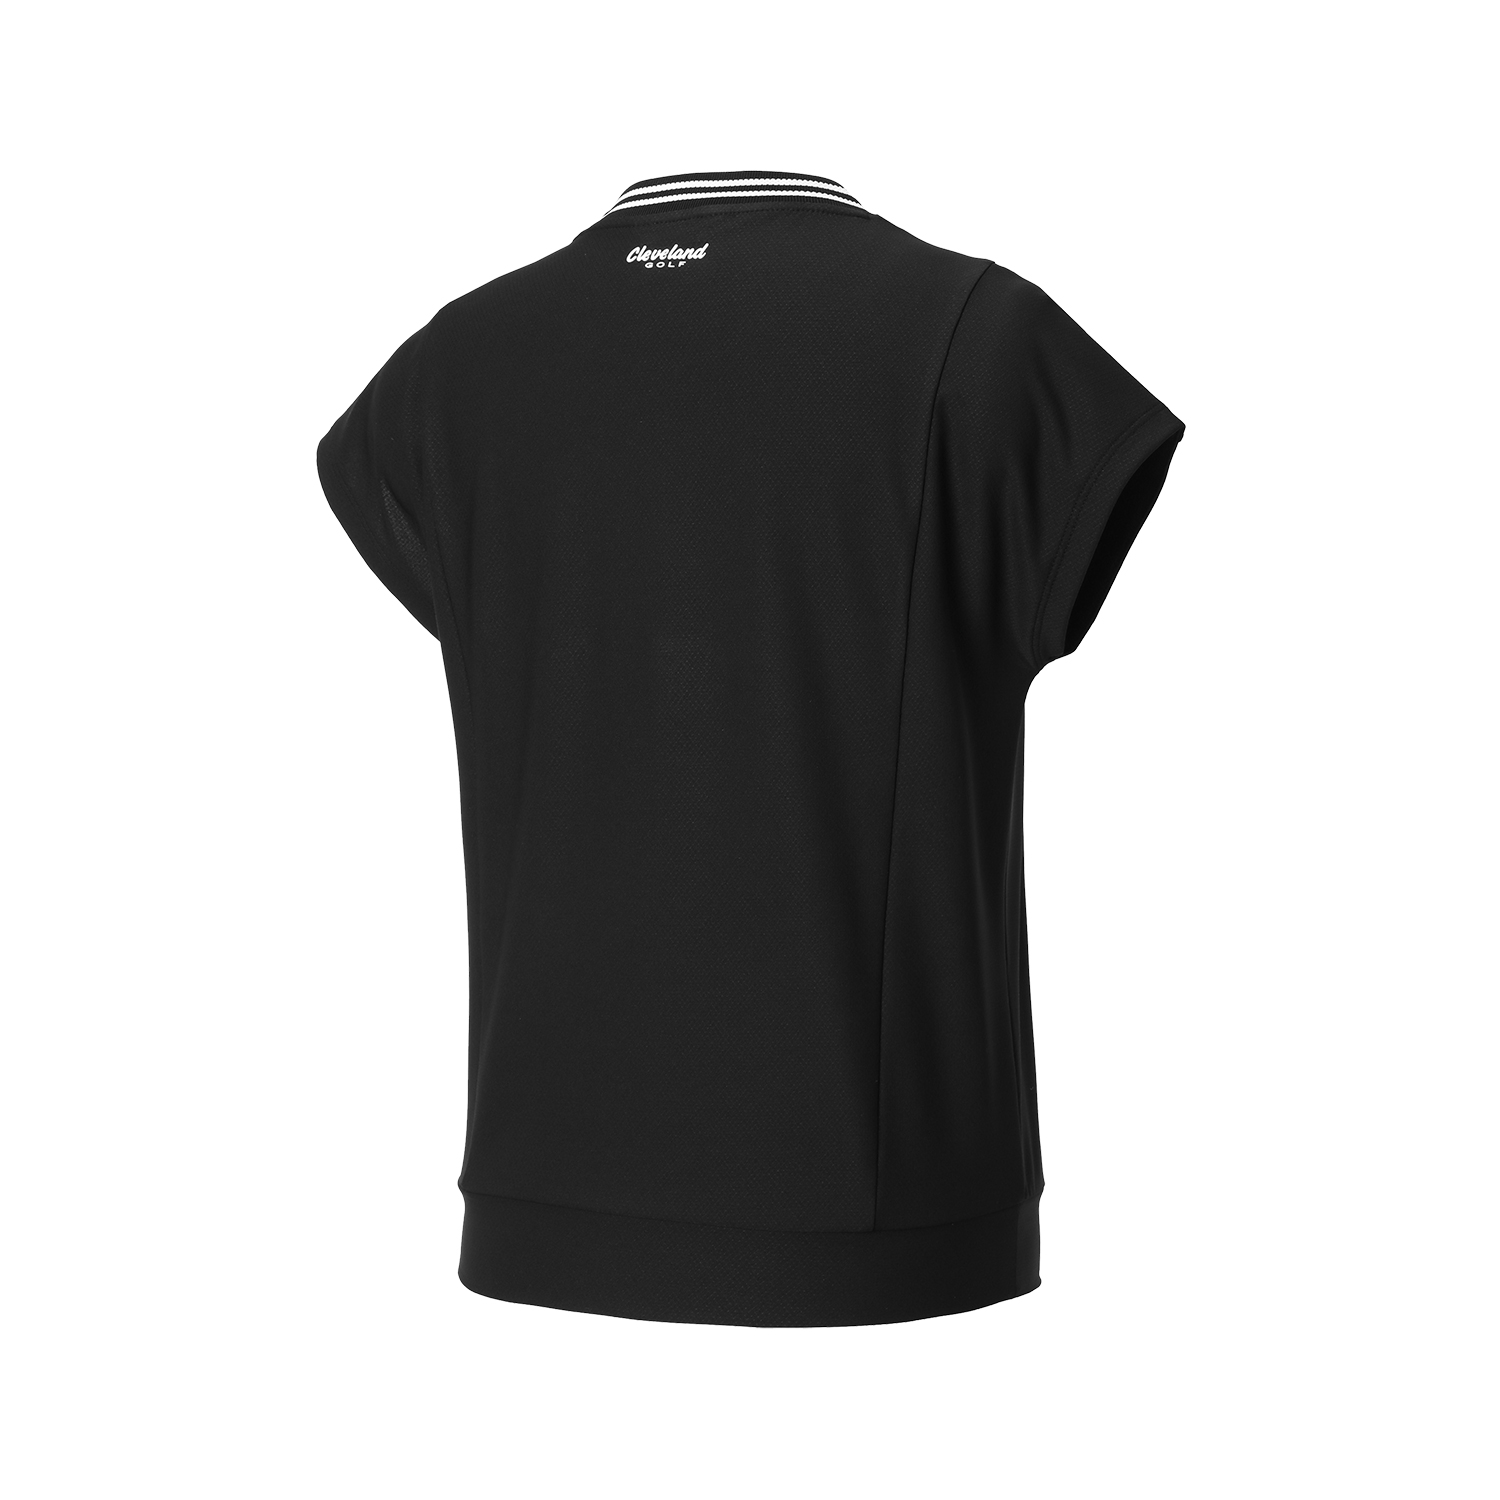 온라인단독 폴리스판 배색라운드 여성 민소매 티셔츠 블랙_CGWST42975BK